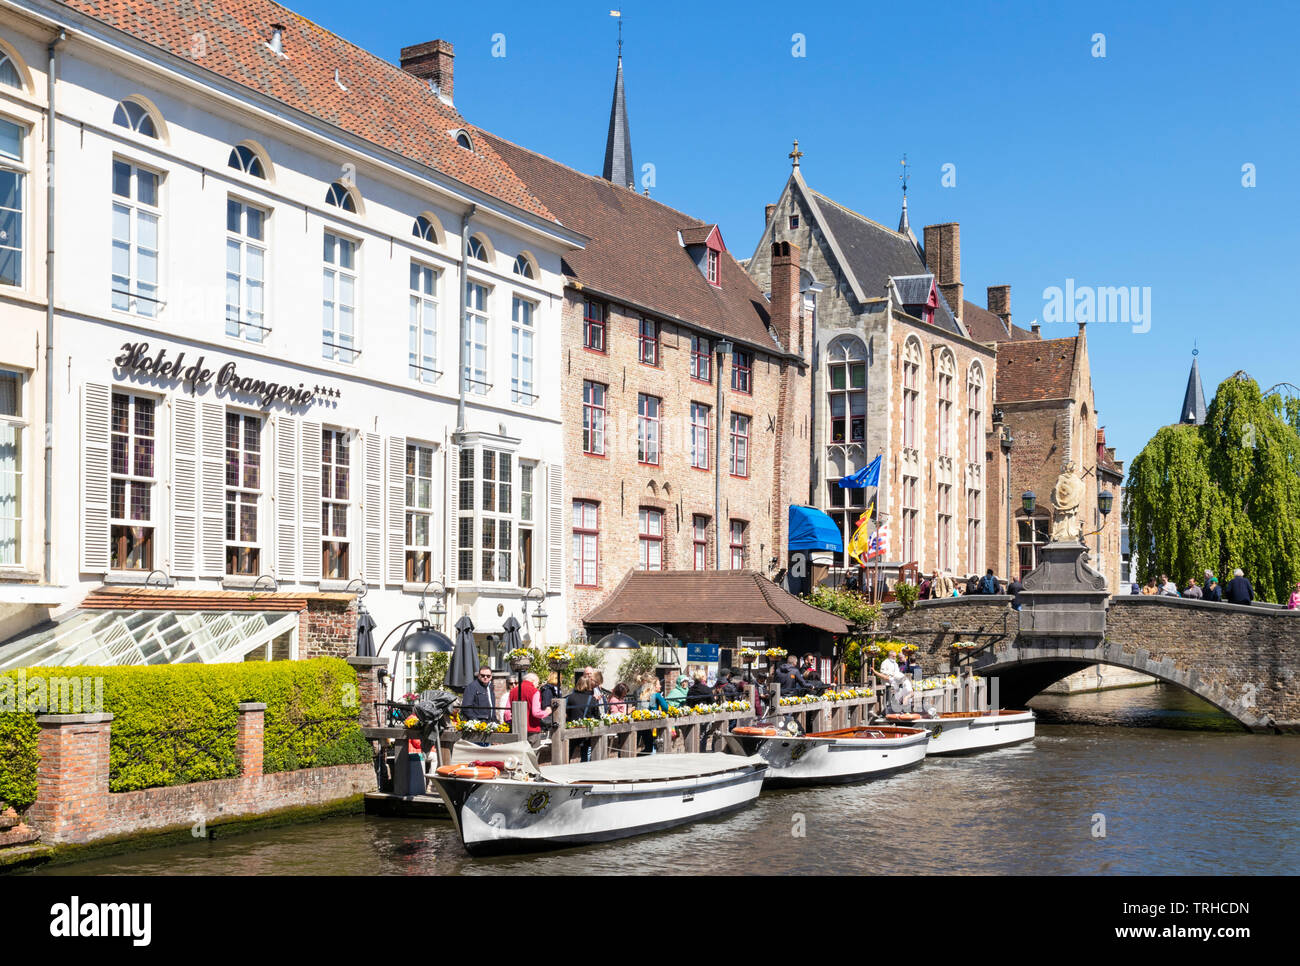 Des excursions en bateau à l'embarcadère sur le canal Den Dijver en face de l'hôtel De Orangerie un ancien couvent du xvie siècle à Bruges Belgique eu Europe Banque D'Images